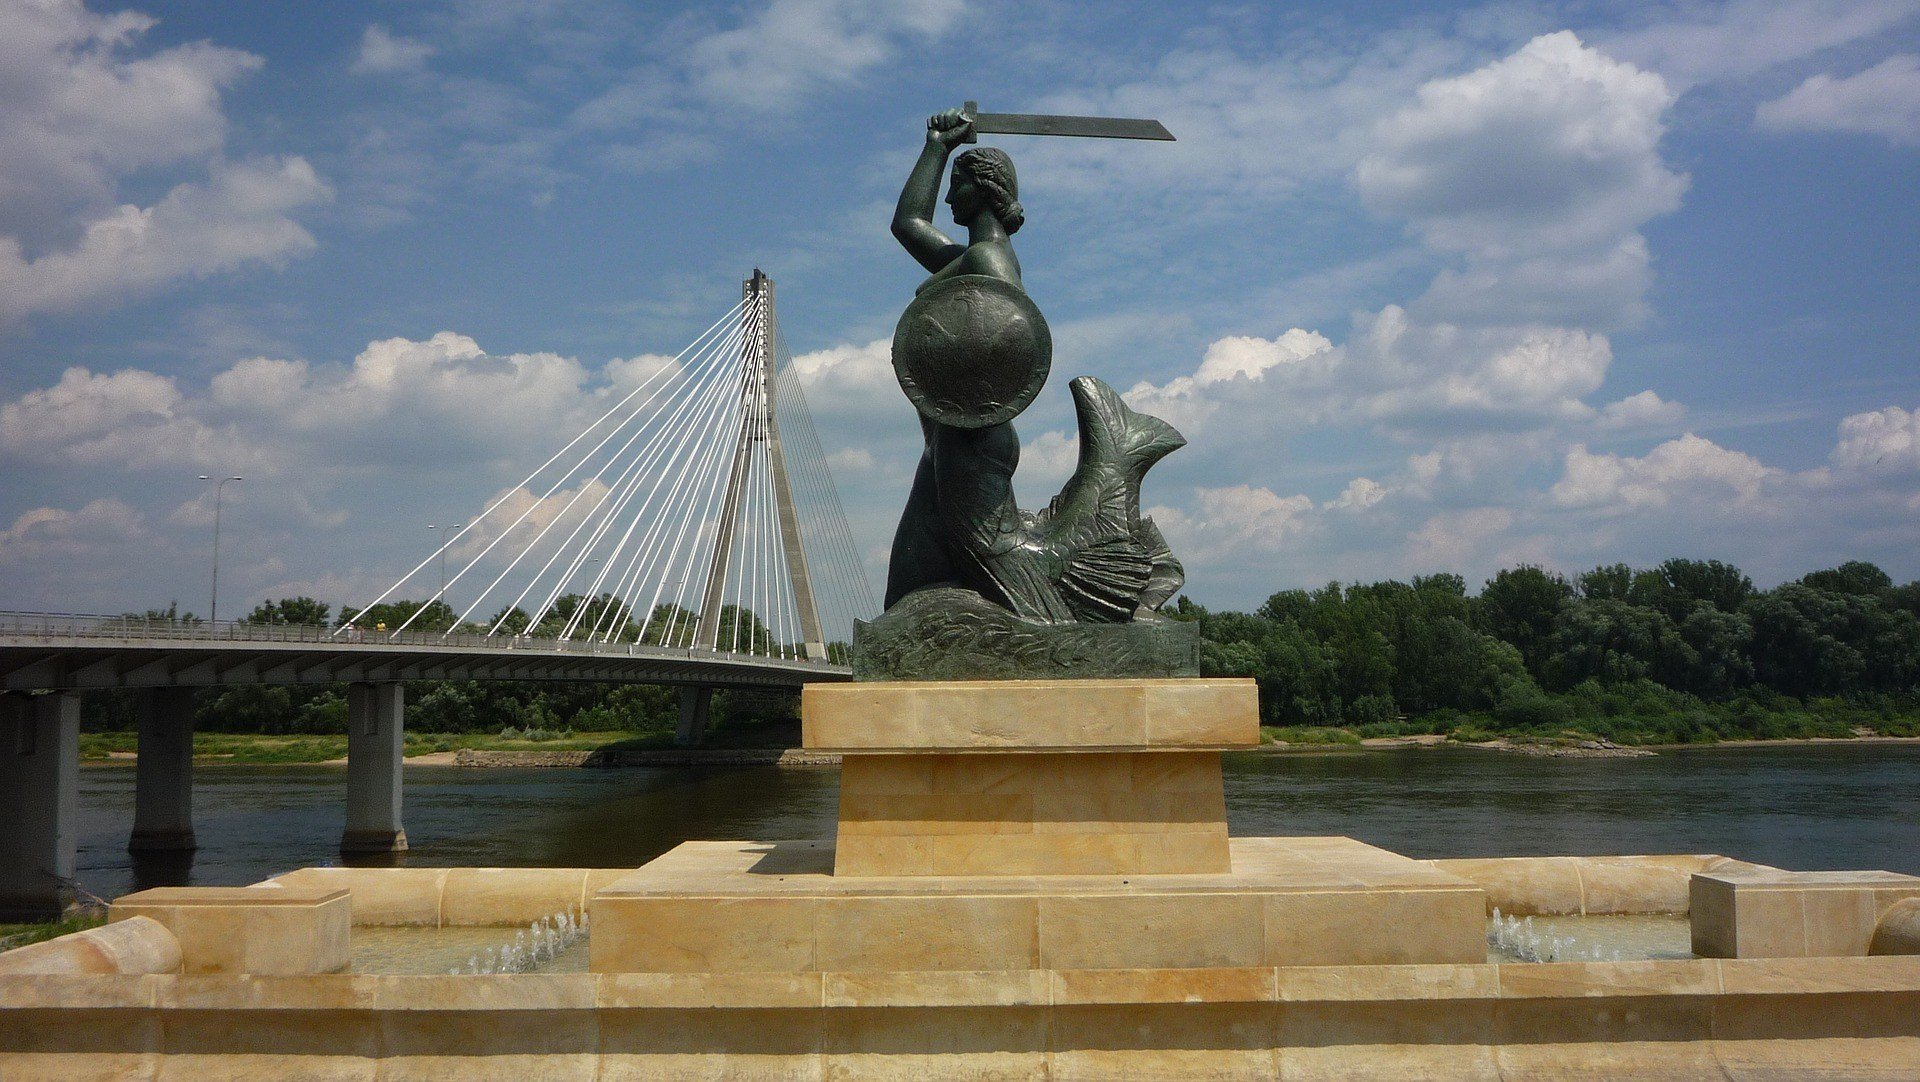 Vistula River Bank, Warsaw